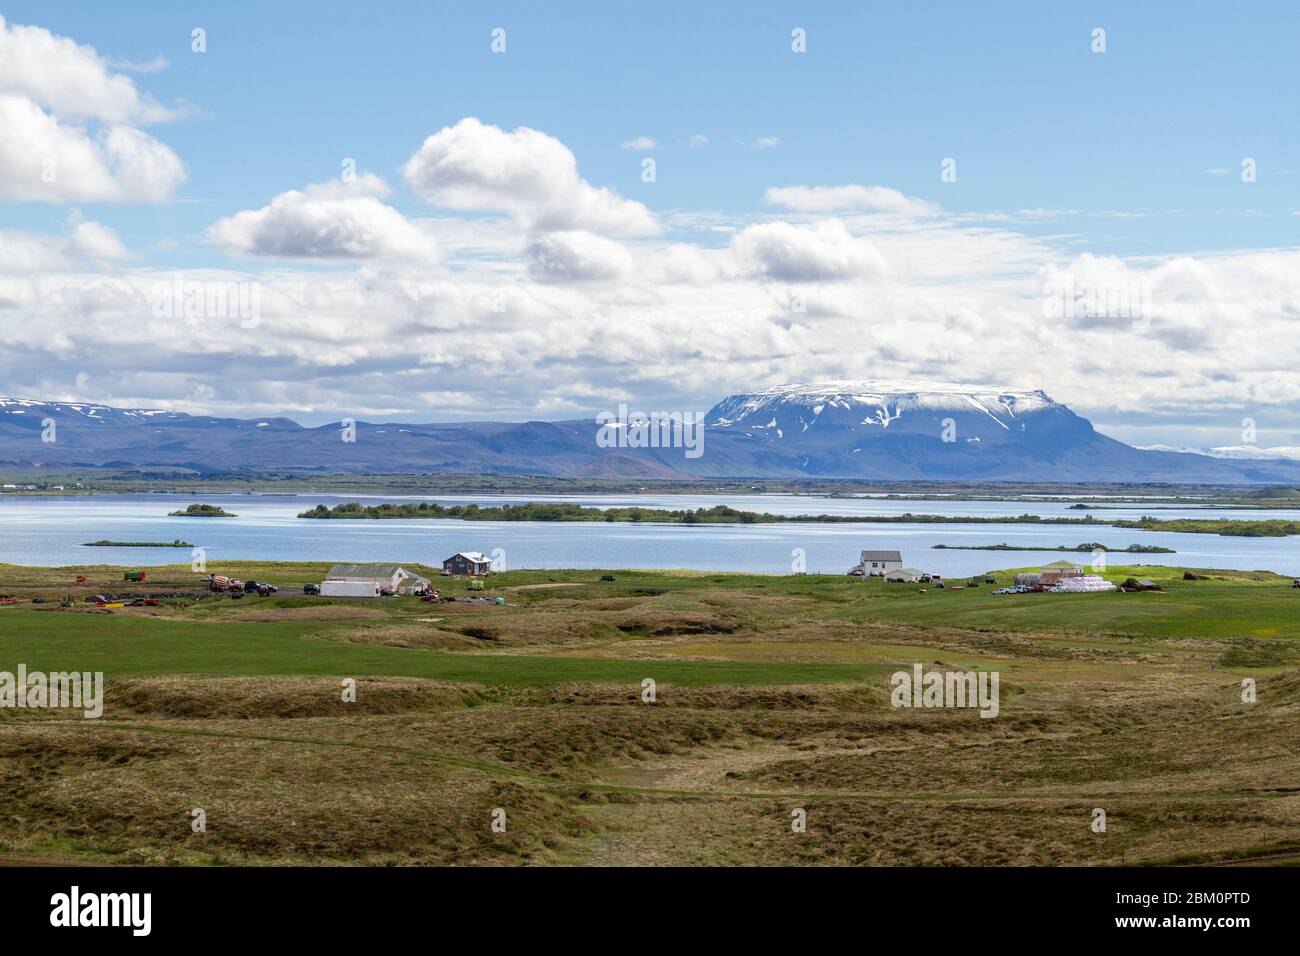 Stunning view looking SE across part of Lake Mývatn, Iceland towards Bláfjall, a Pleistocene table mountain. Stock Photo